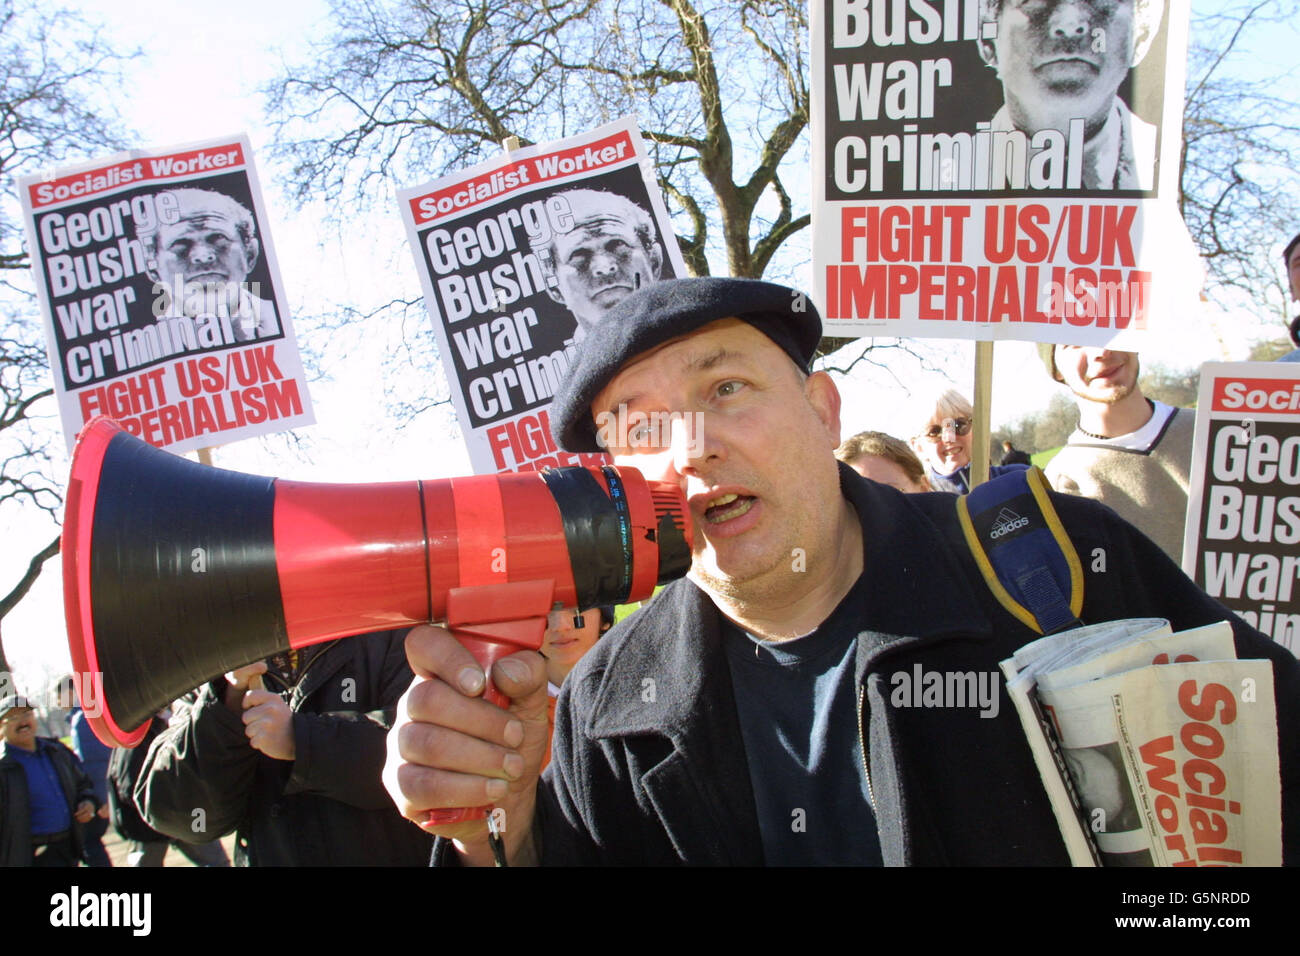 Fred Fitton nimmt an einem Antikriegsprotest Teil, um gegen den Konflikt mit Afghanistan zu demonstrieren, und zwar in der Speakers Corner im Hyde Park, London. Der marsch ist für den Trafalgar Square vorgesehen. Stockfoto